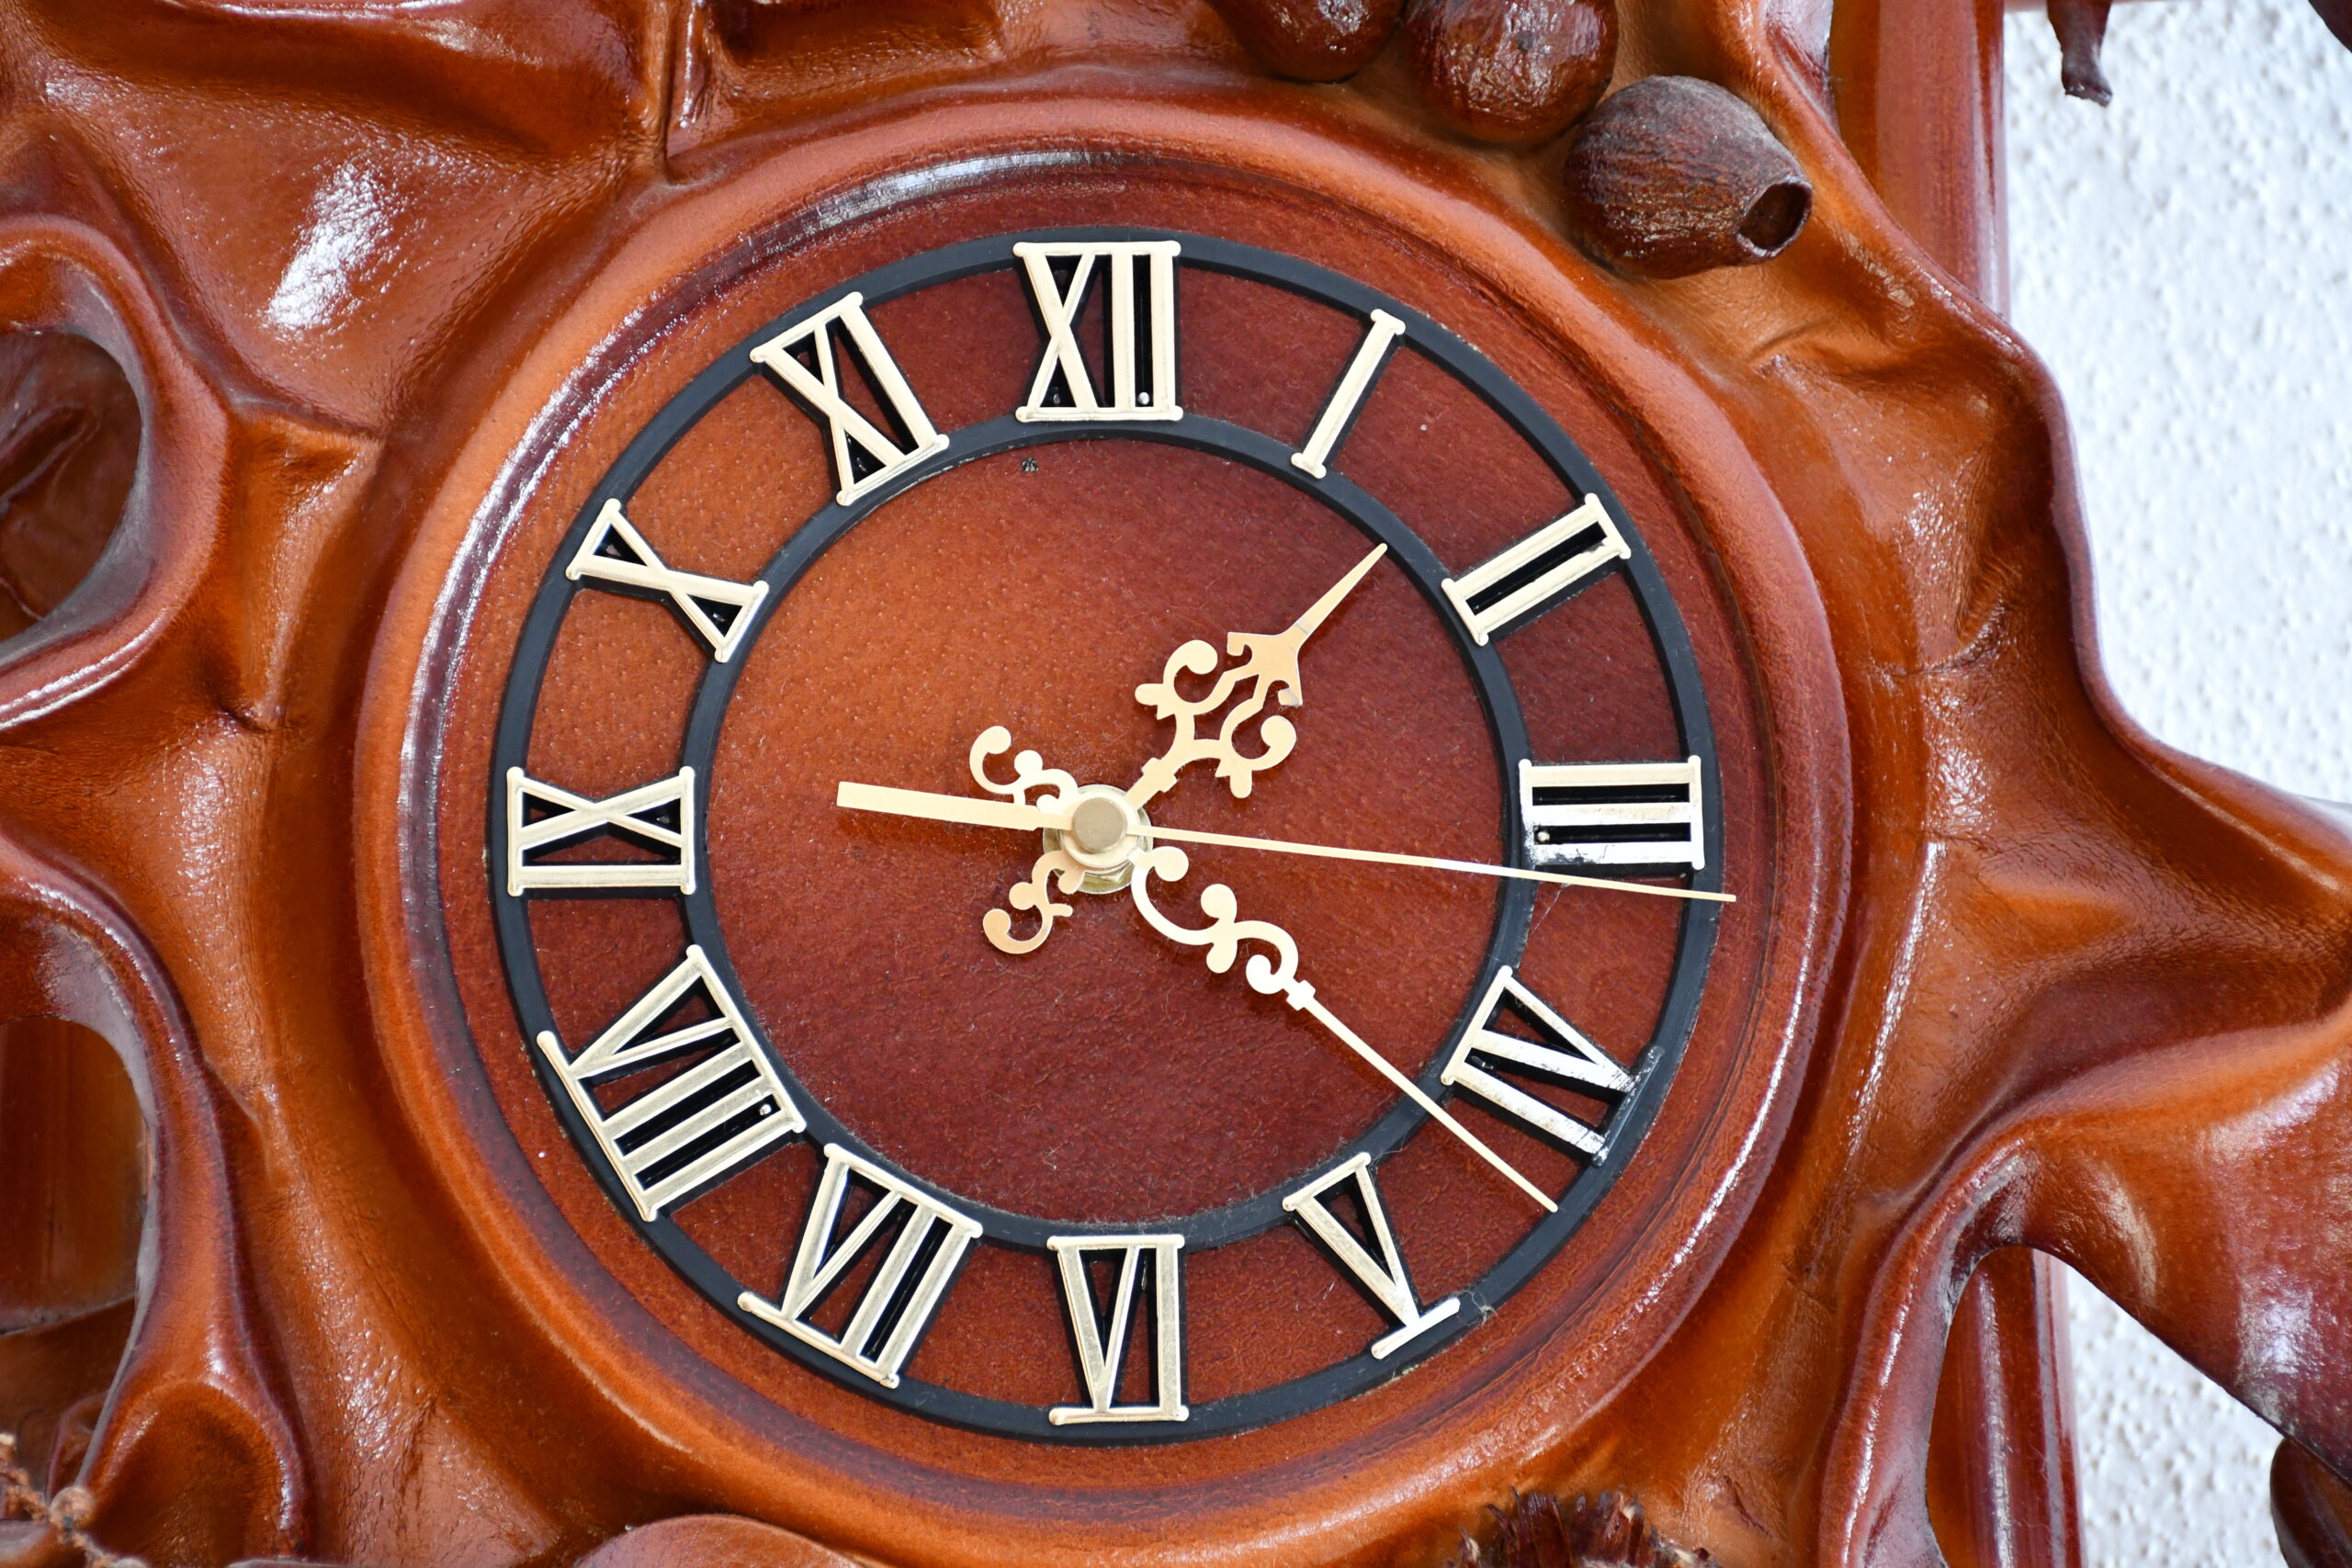 Zegar skórzany wskazujący godzinę ok. 13:27